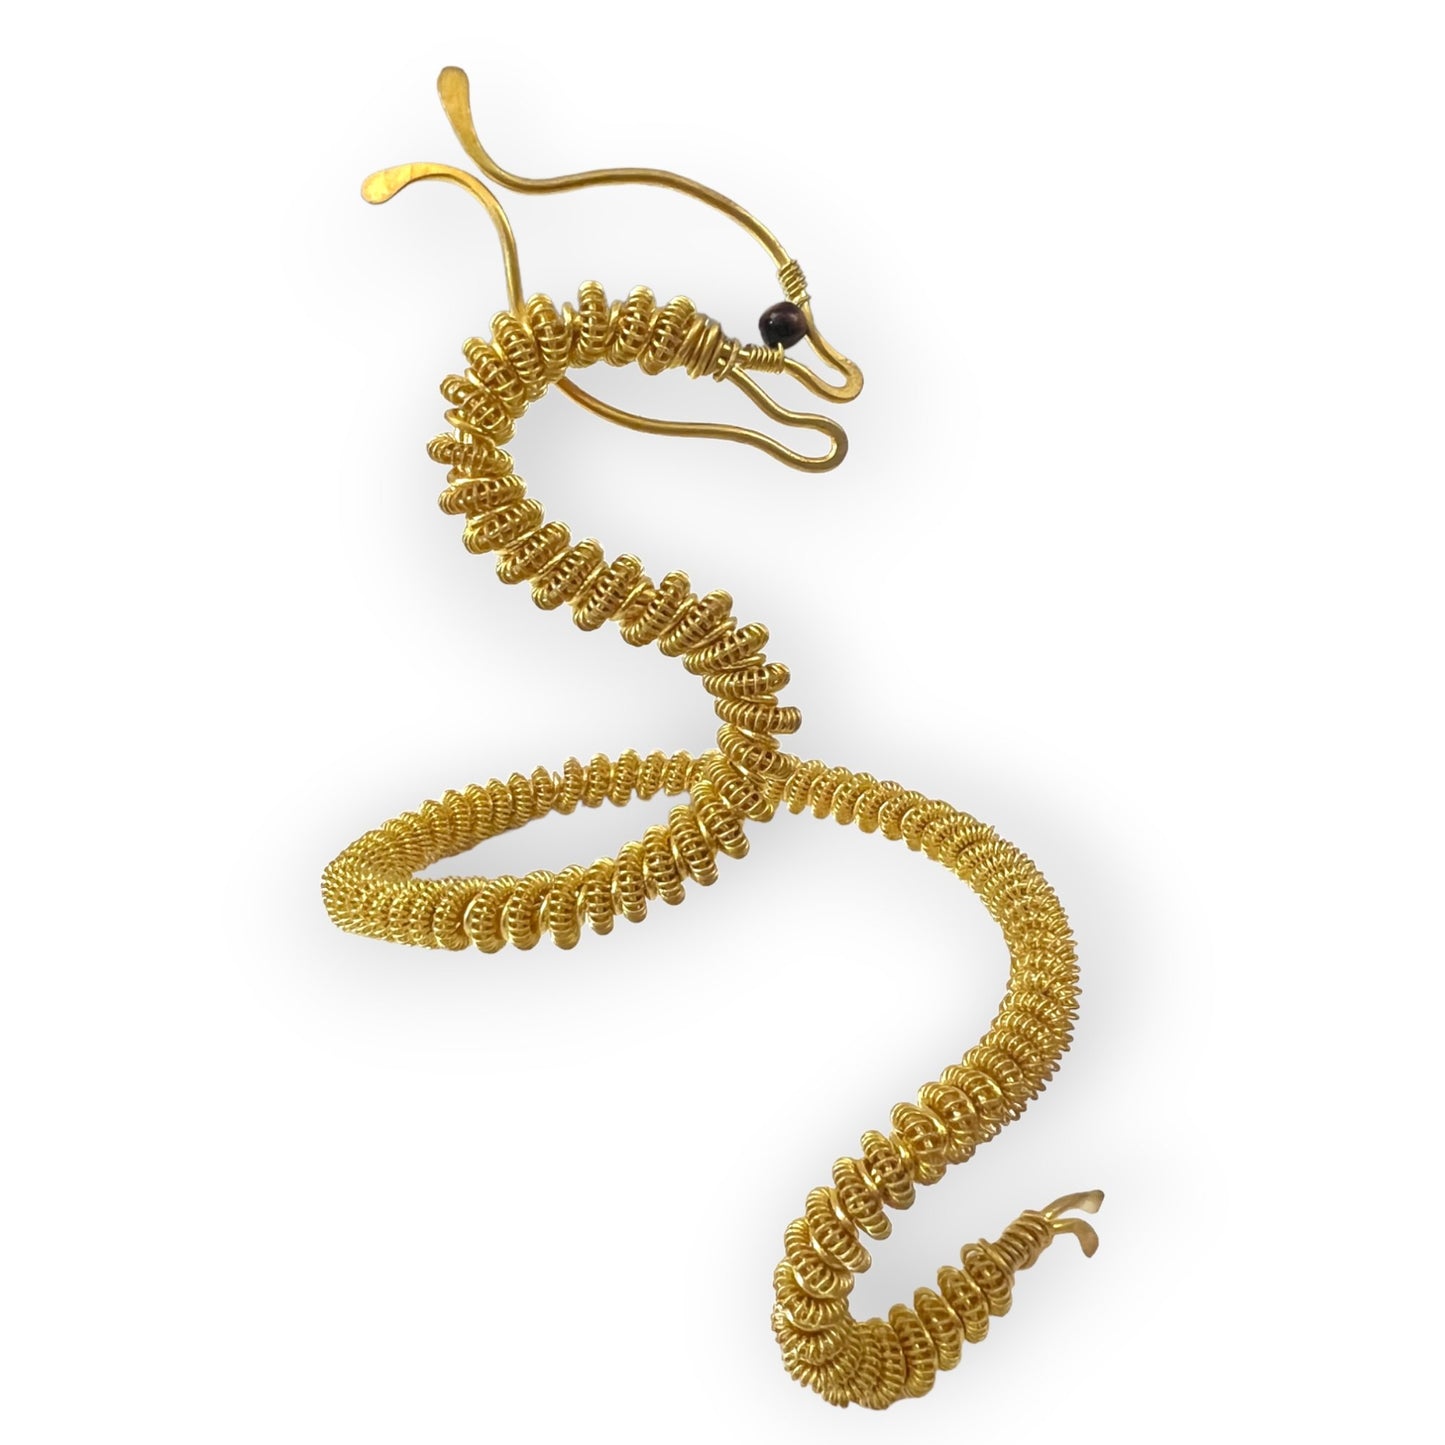 Serpentine inspired brass cuff bracelet - Sundara Joon